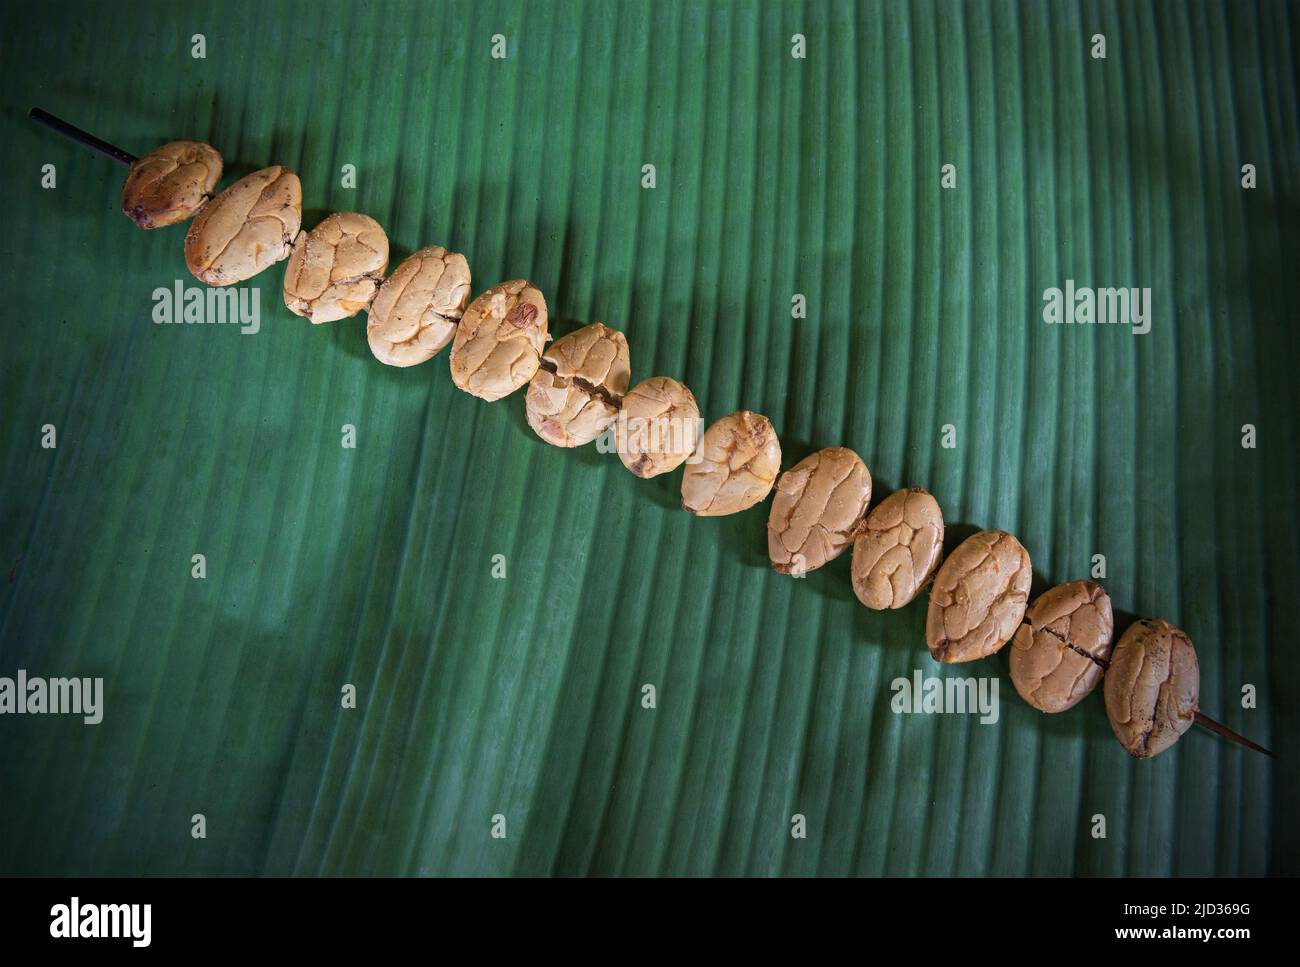 La brochette de fèves de cacao blanc grillé sur la feuille de palmier est une nourriture traditionnelle dans la forêt amazonienne, en Équateur. Banque D'Images